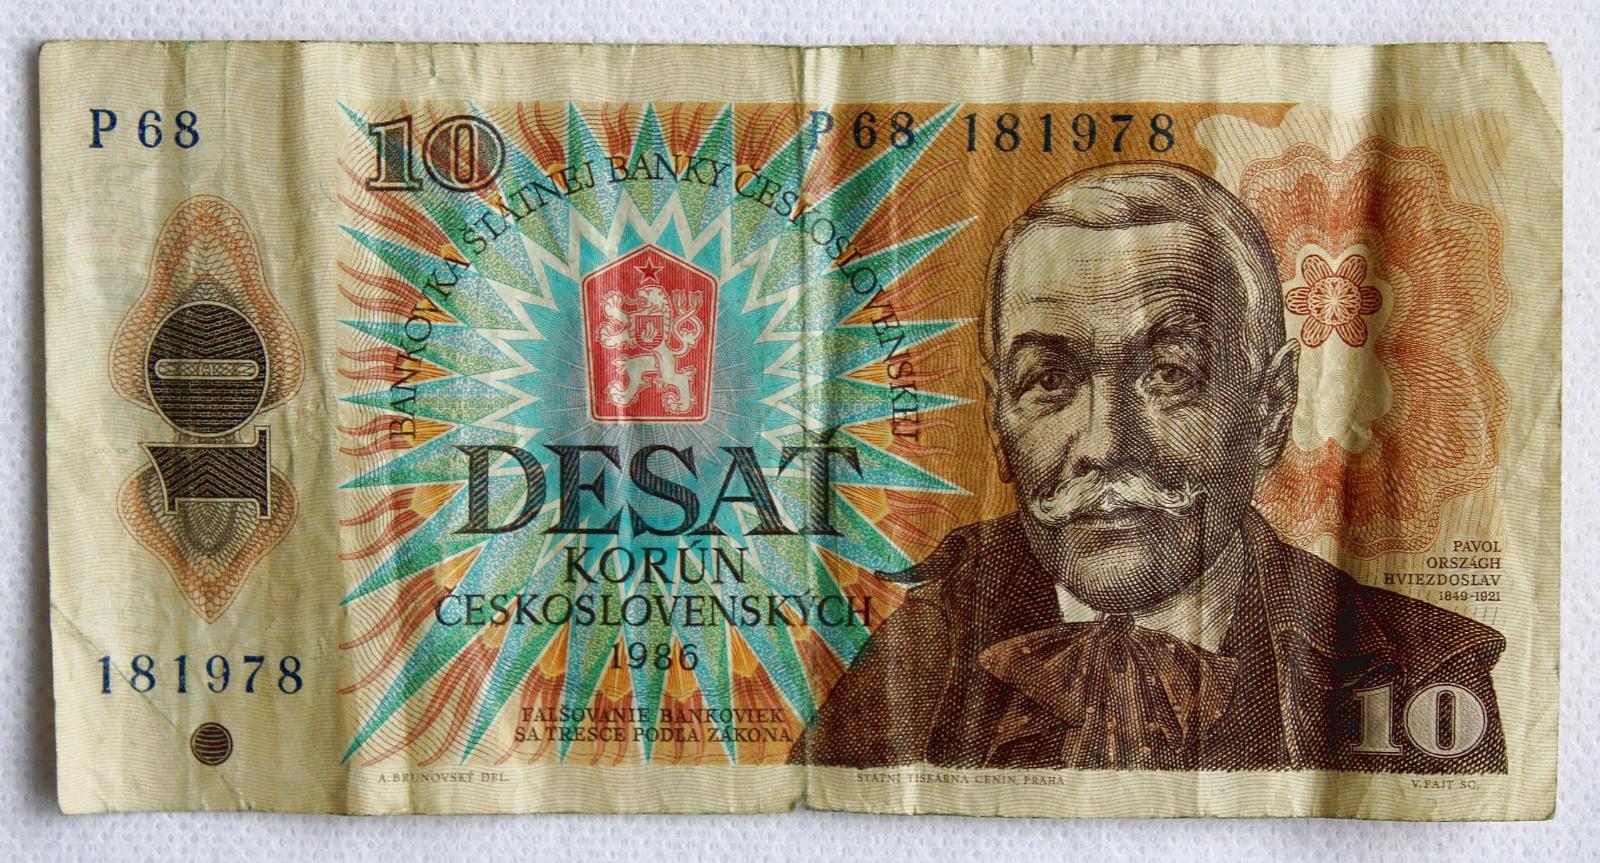 10 korún Československých 1986 séria P 68 (8a) - Bankovky